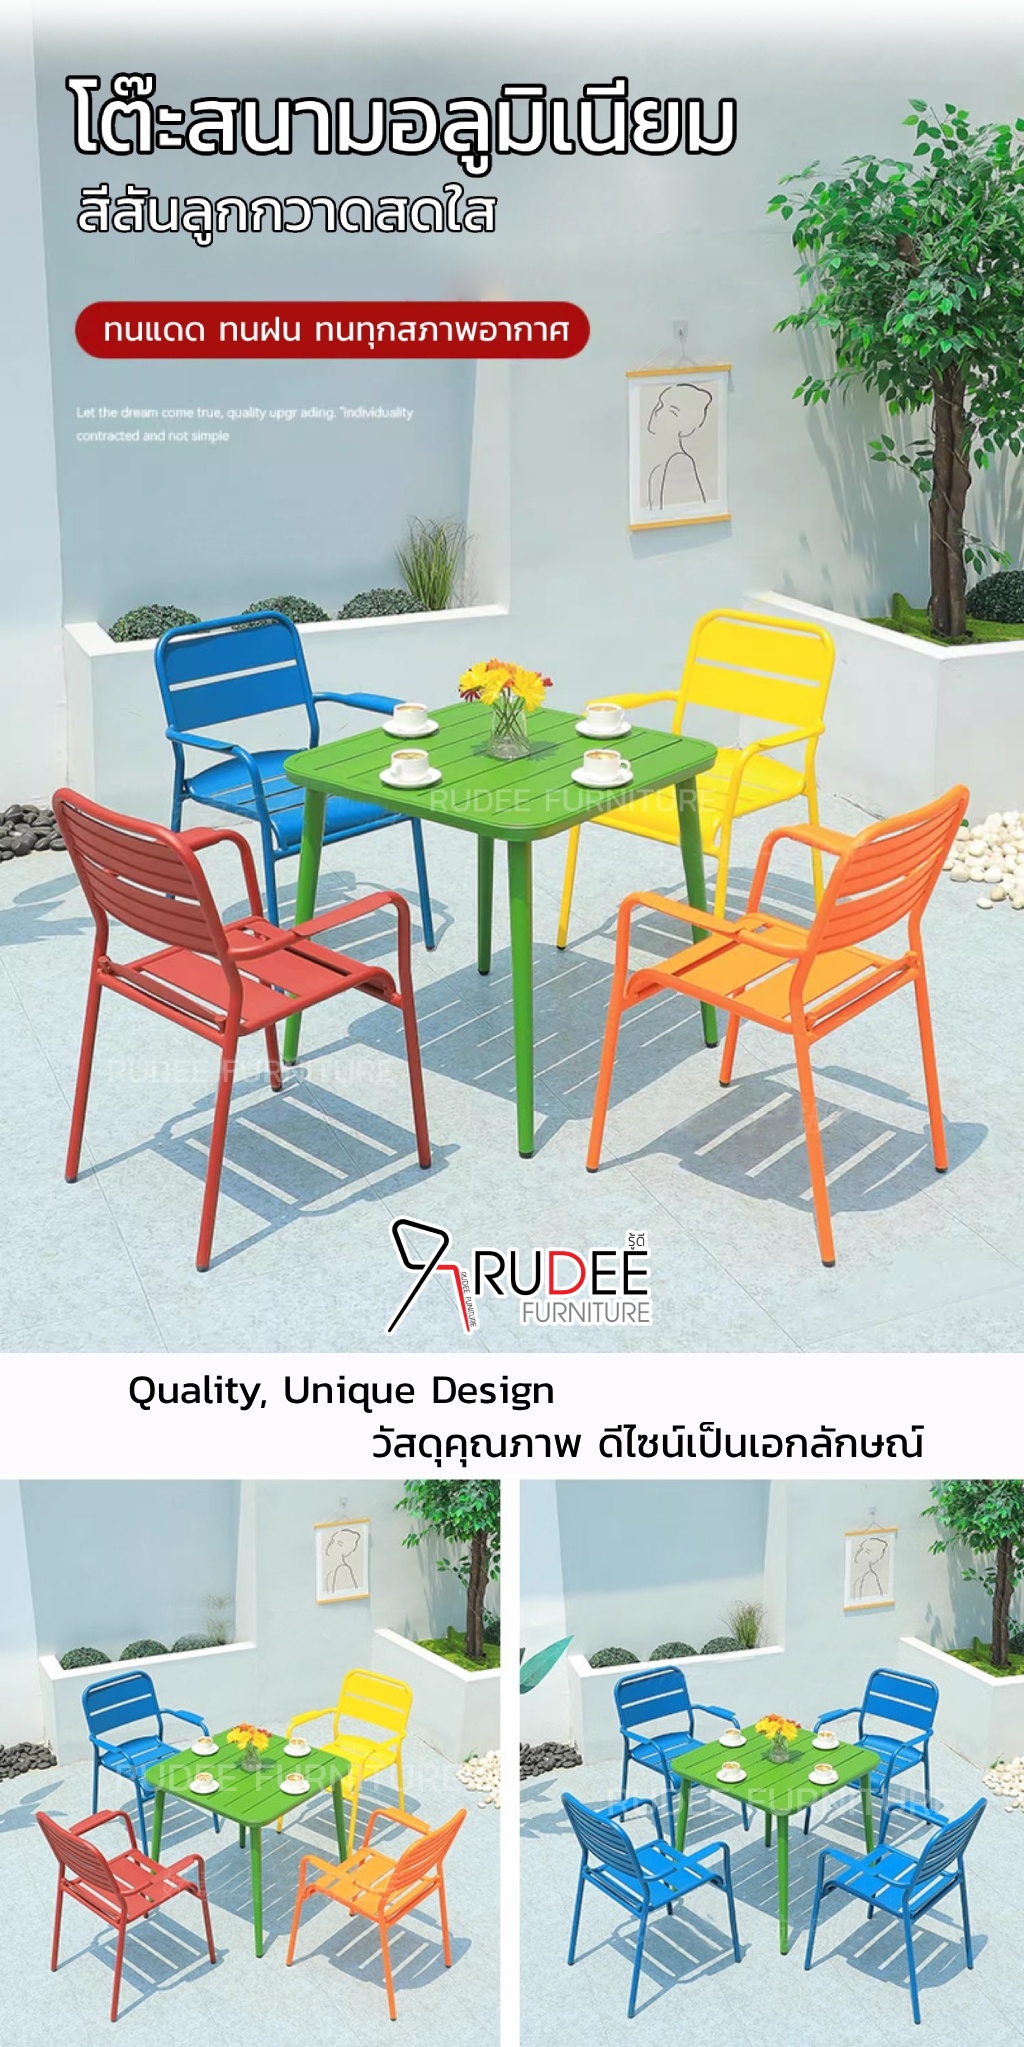 ชุดโต๊ะสนามอลูมิเนียม เก้าอี้หลายสีสันสดใส ใช้ภายนอกกันสนิม